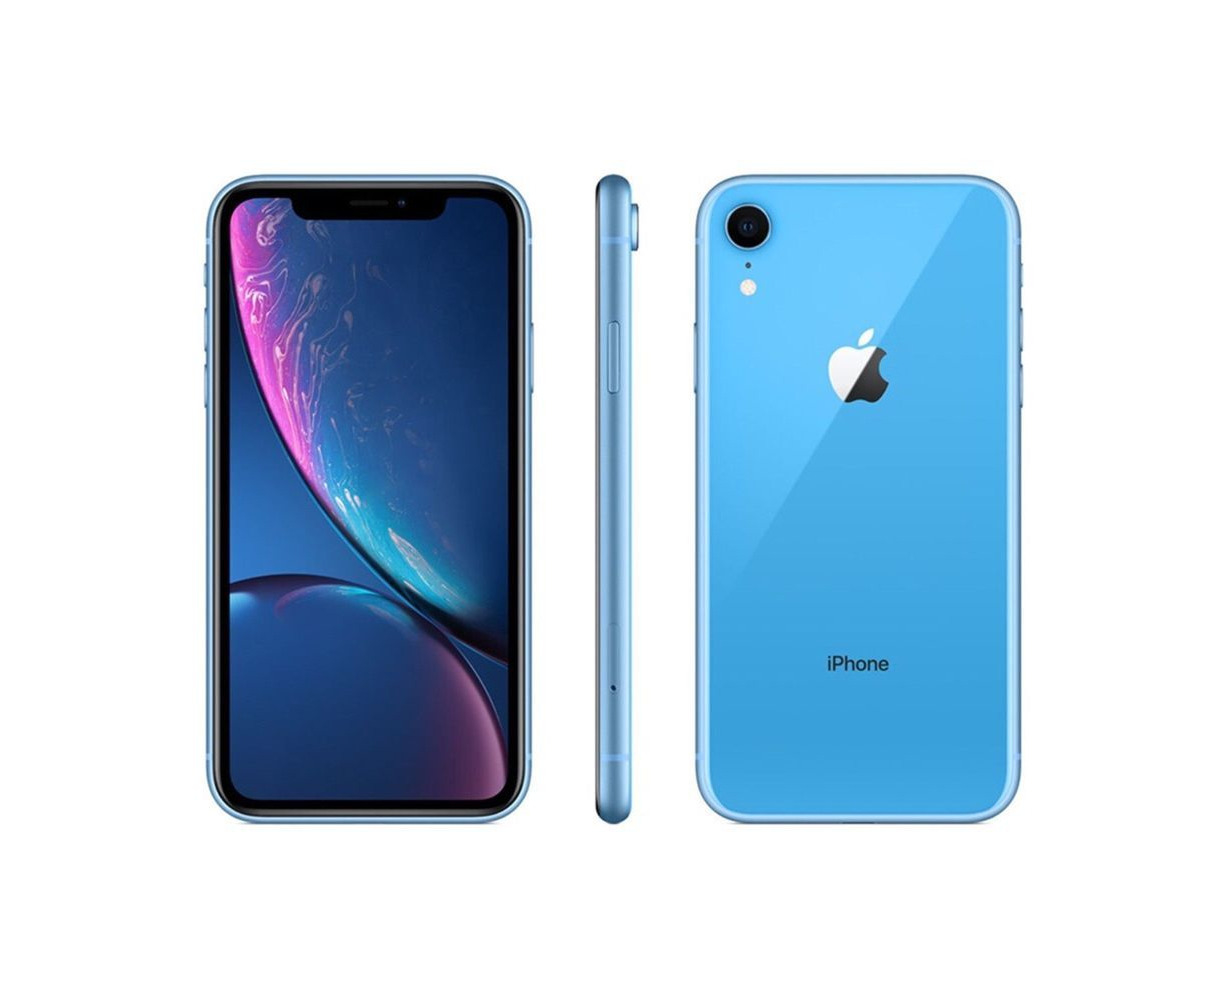 Apple iPhone XR (64GB) - Blue. - Refurbished Grade A | Catch.com.au